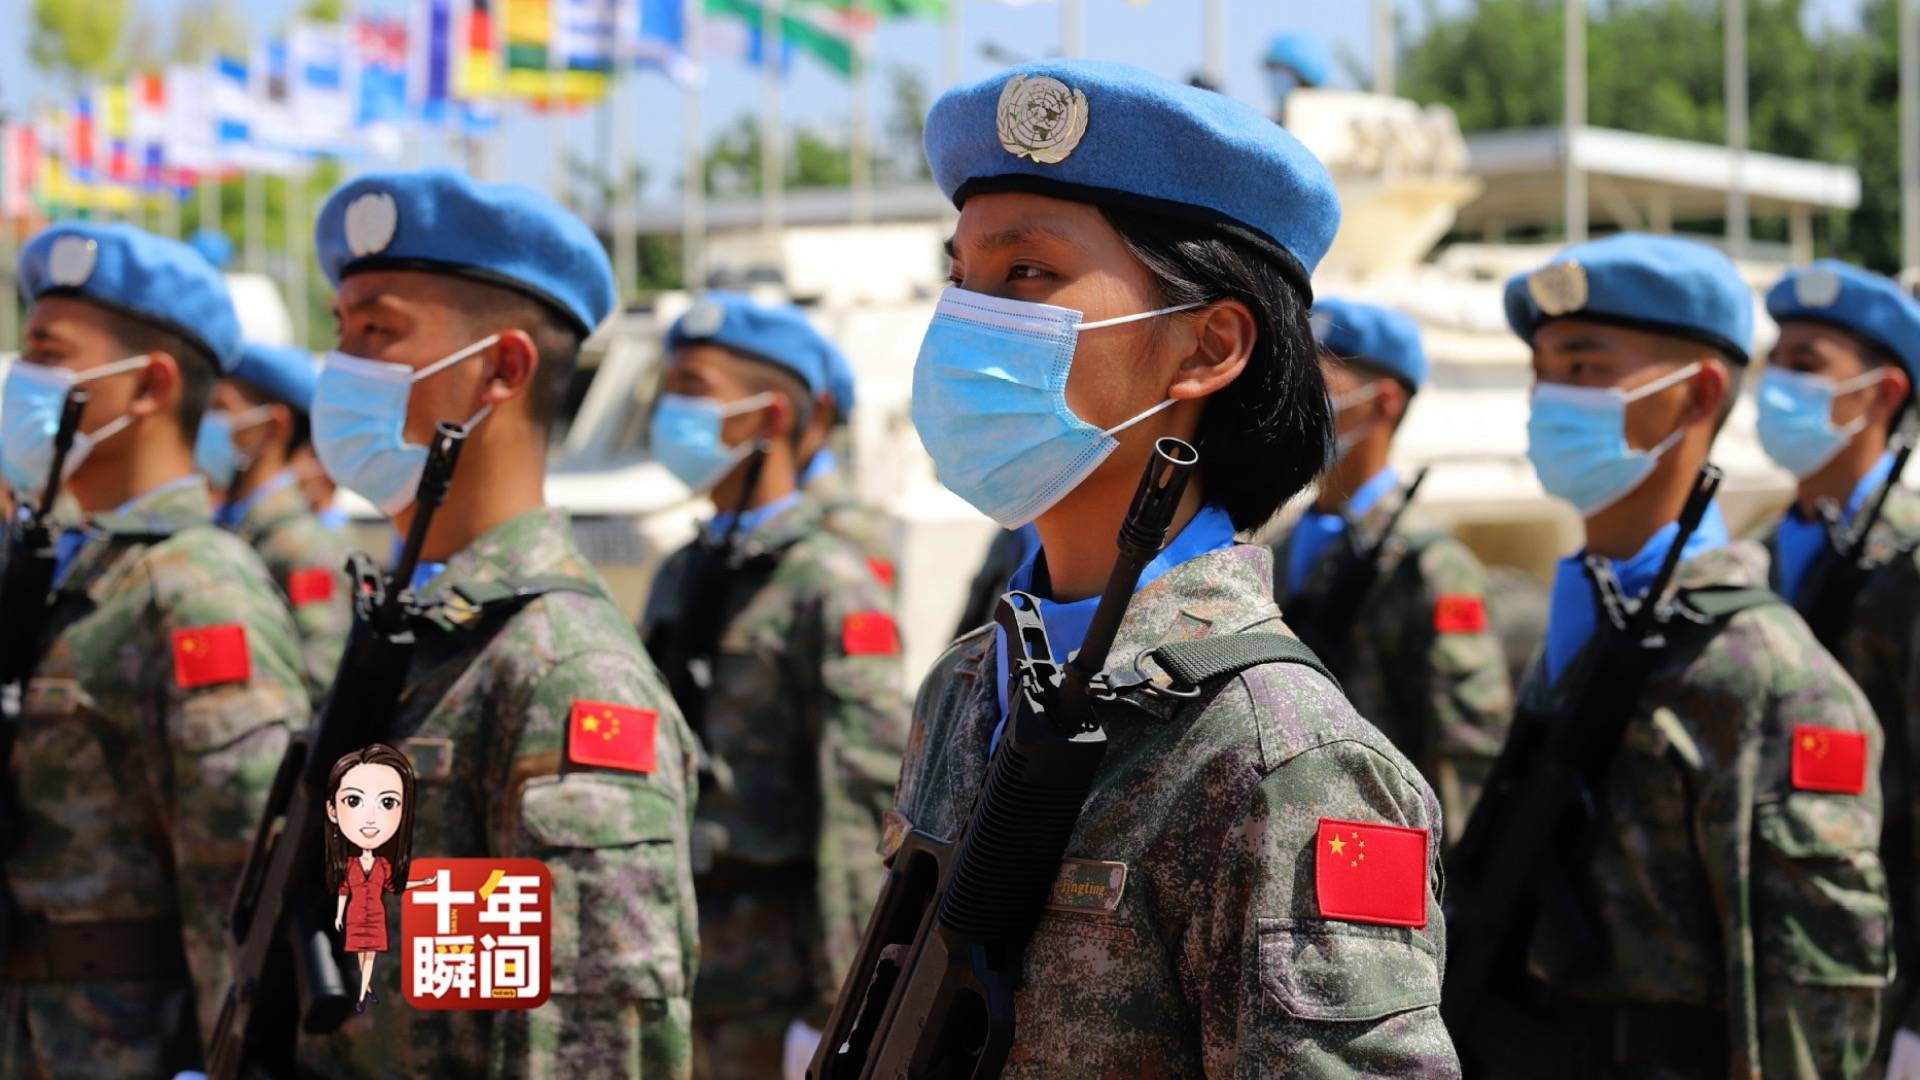 电影《中国蓝盔》让全社会了解维和行动意义和军人的无畏与付出~_影片